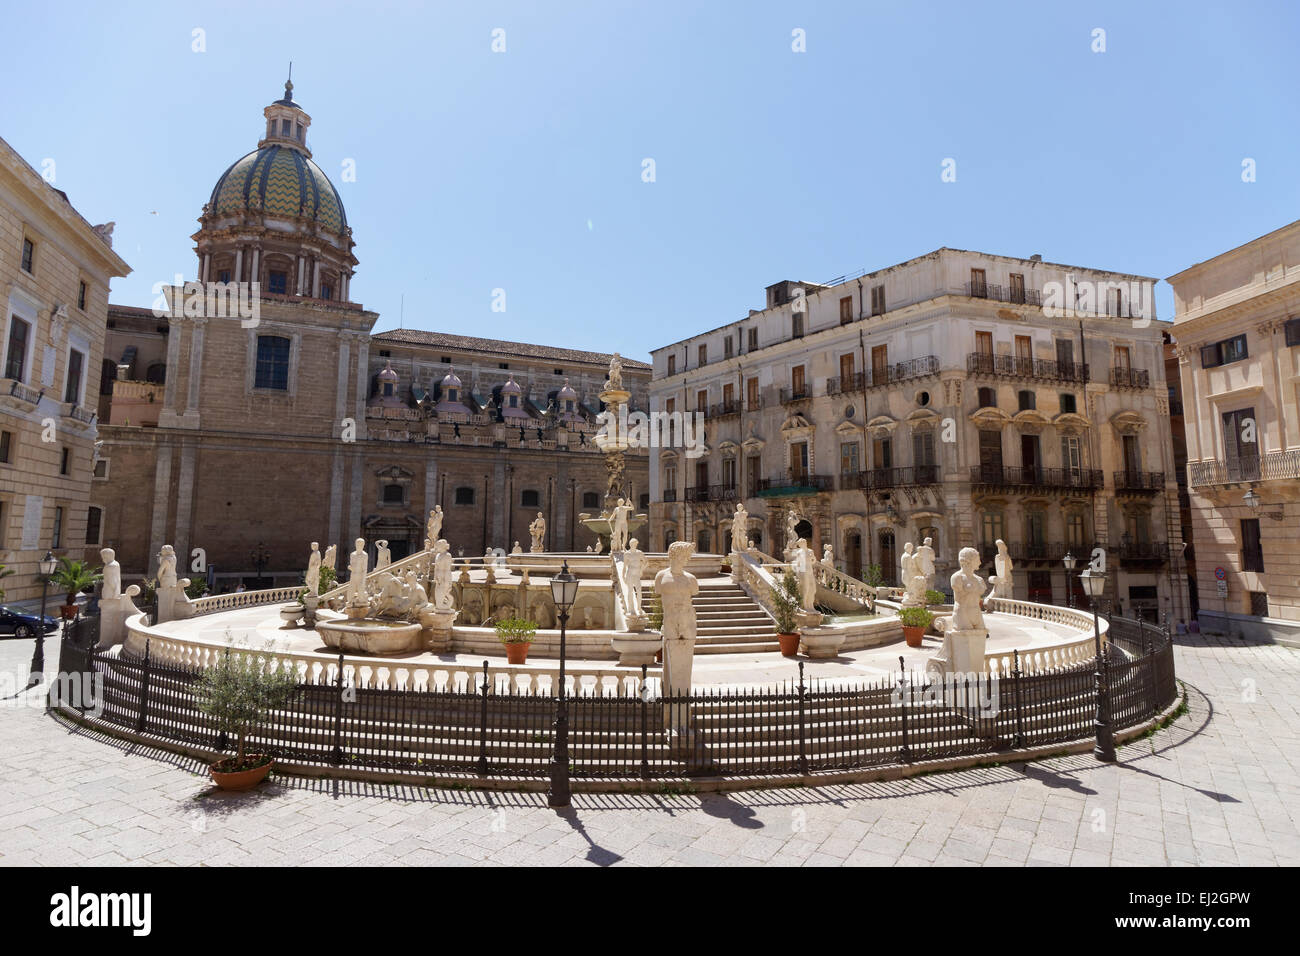 The Fontana Pretoria in the heart of Palermo, Sicily. Stock Photo